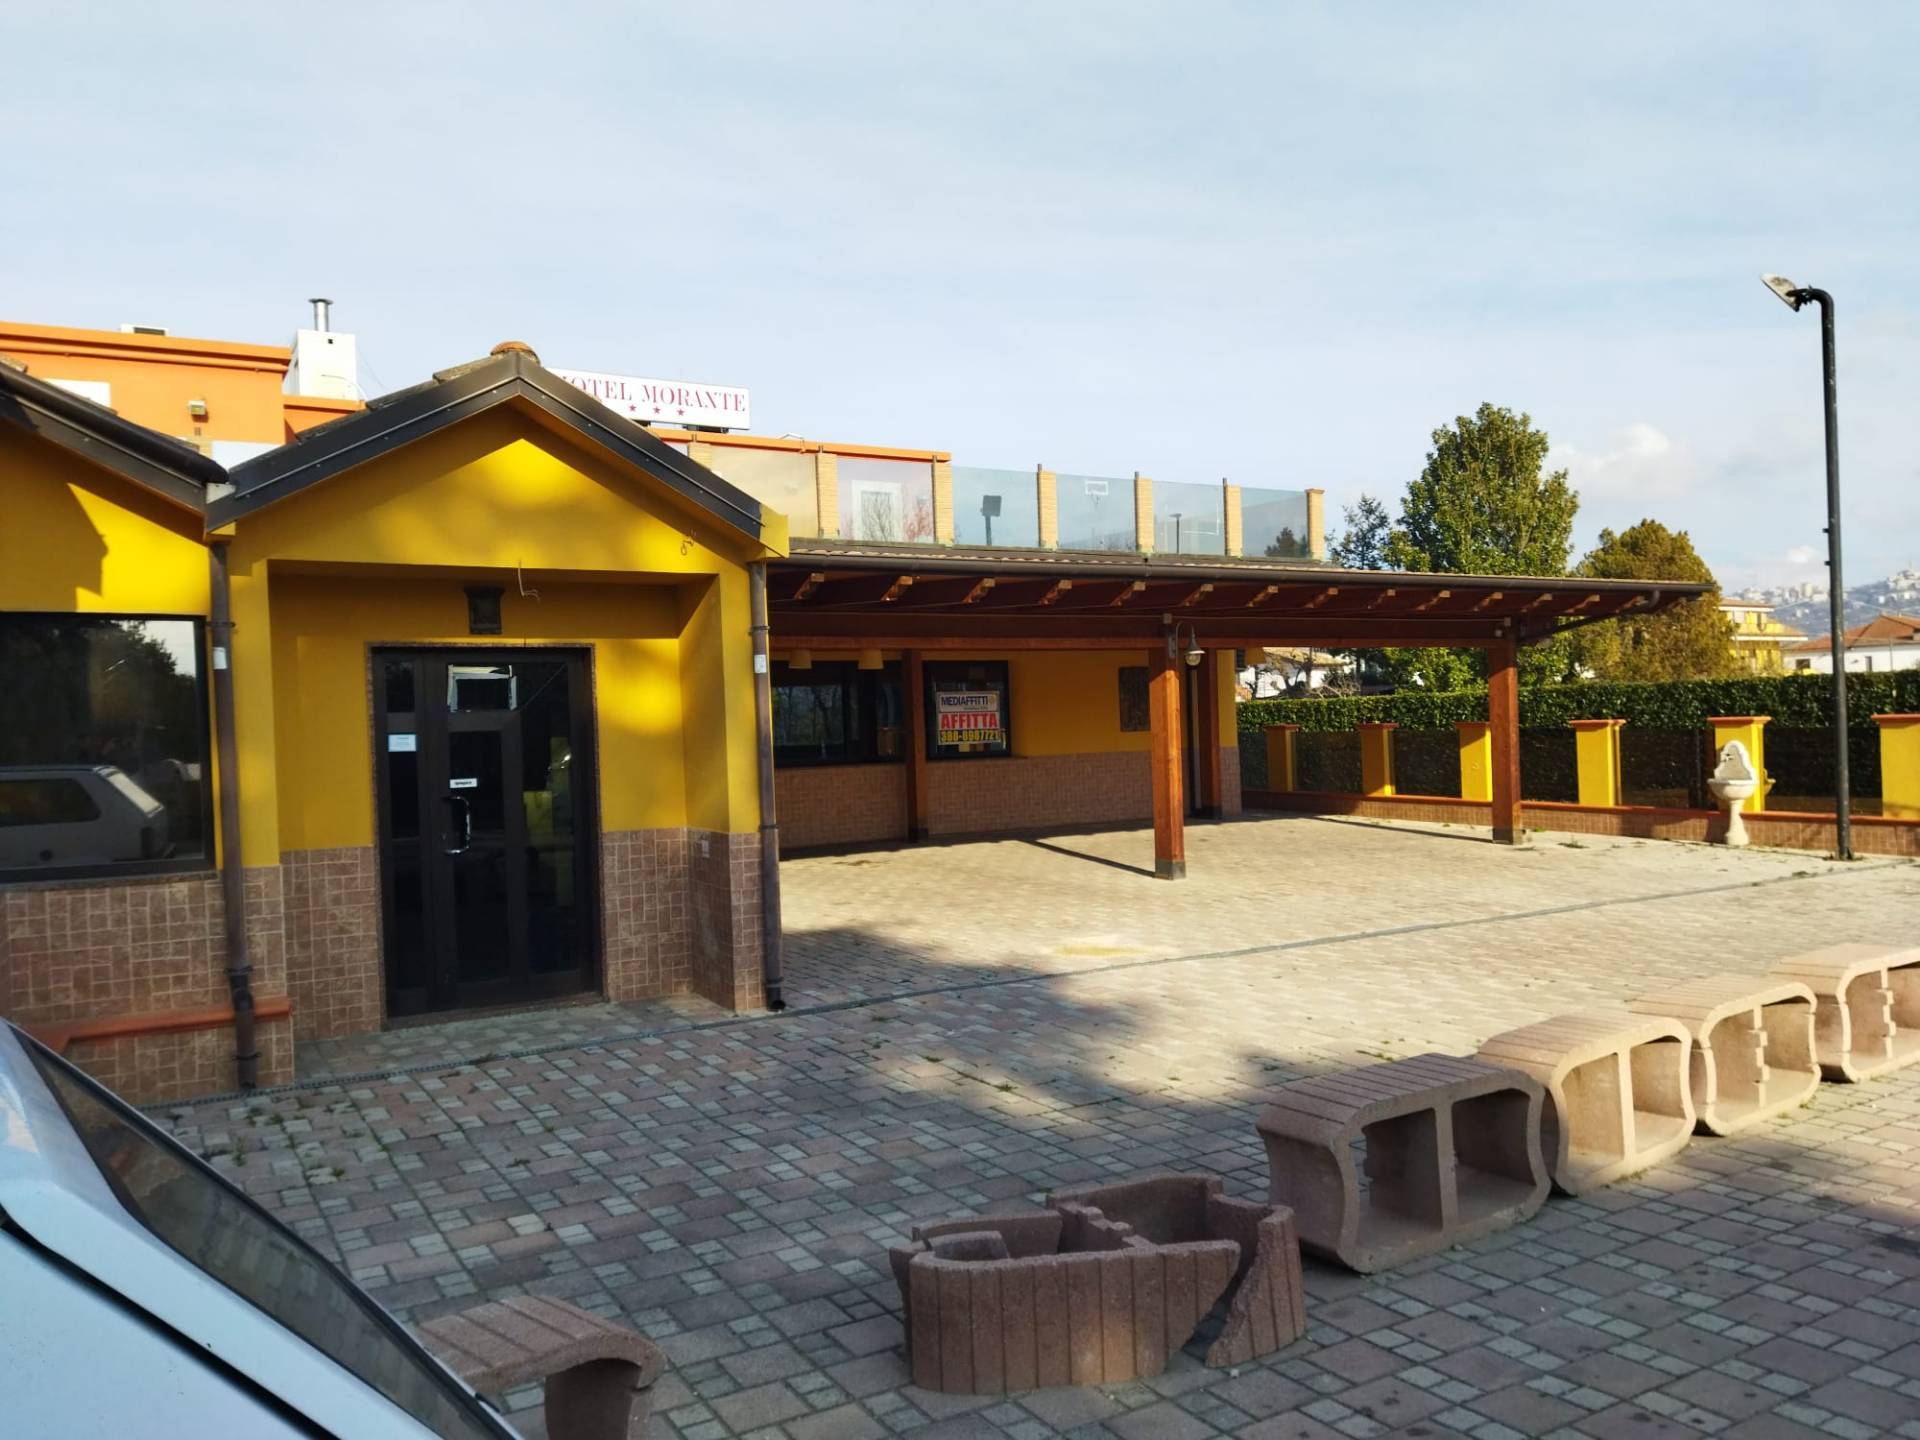 Attività commerciale in affitto a Villareia, Cepagatti (PE)